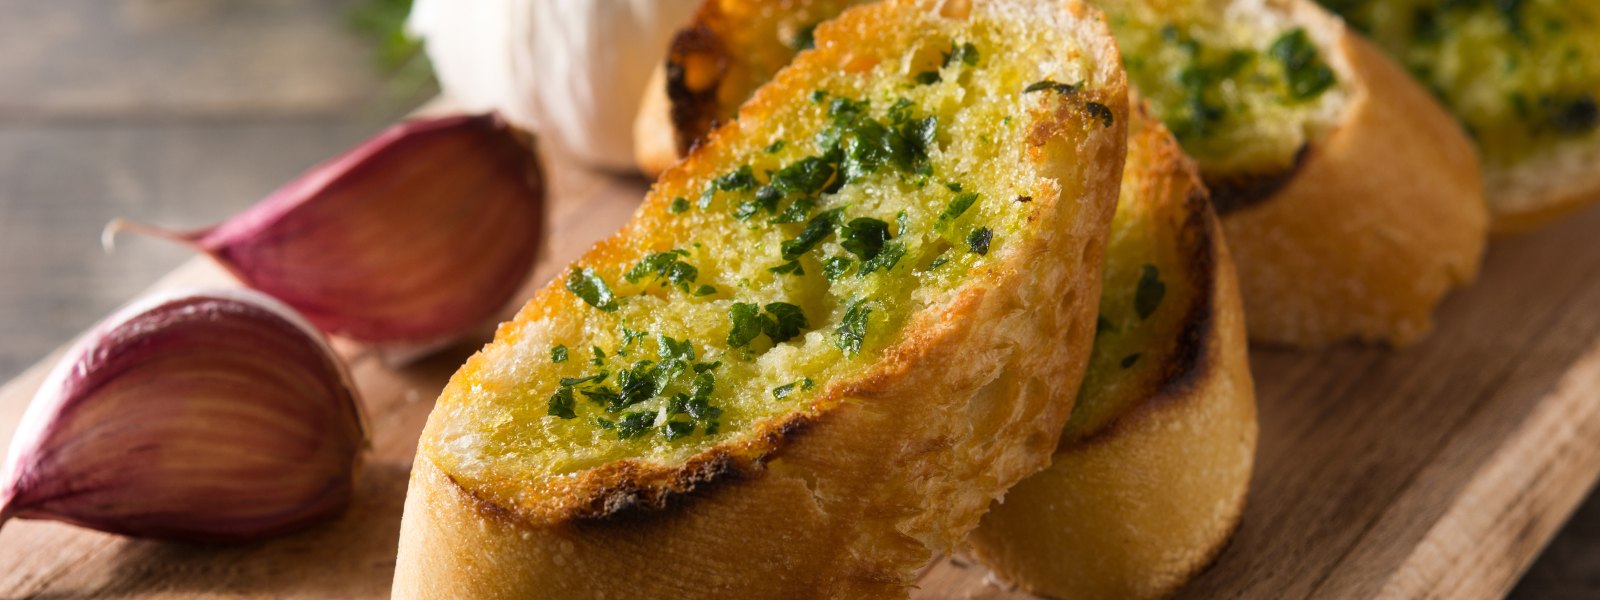 Irresistible Garlic Bread: A Savory Delight